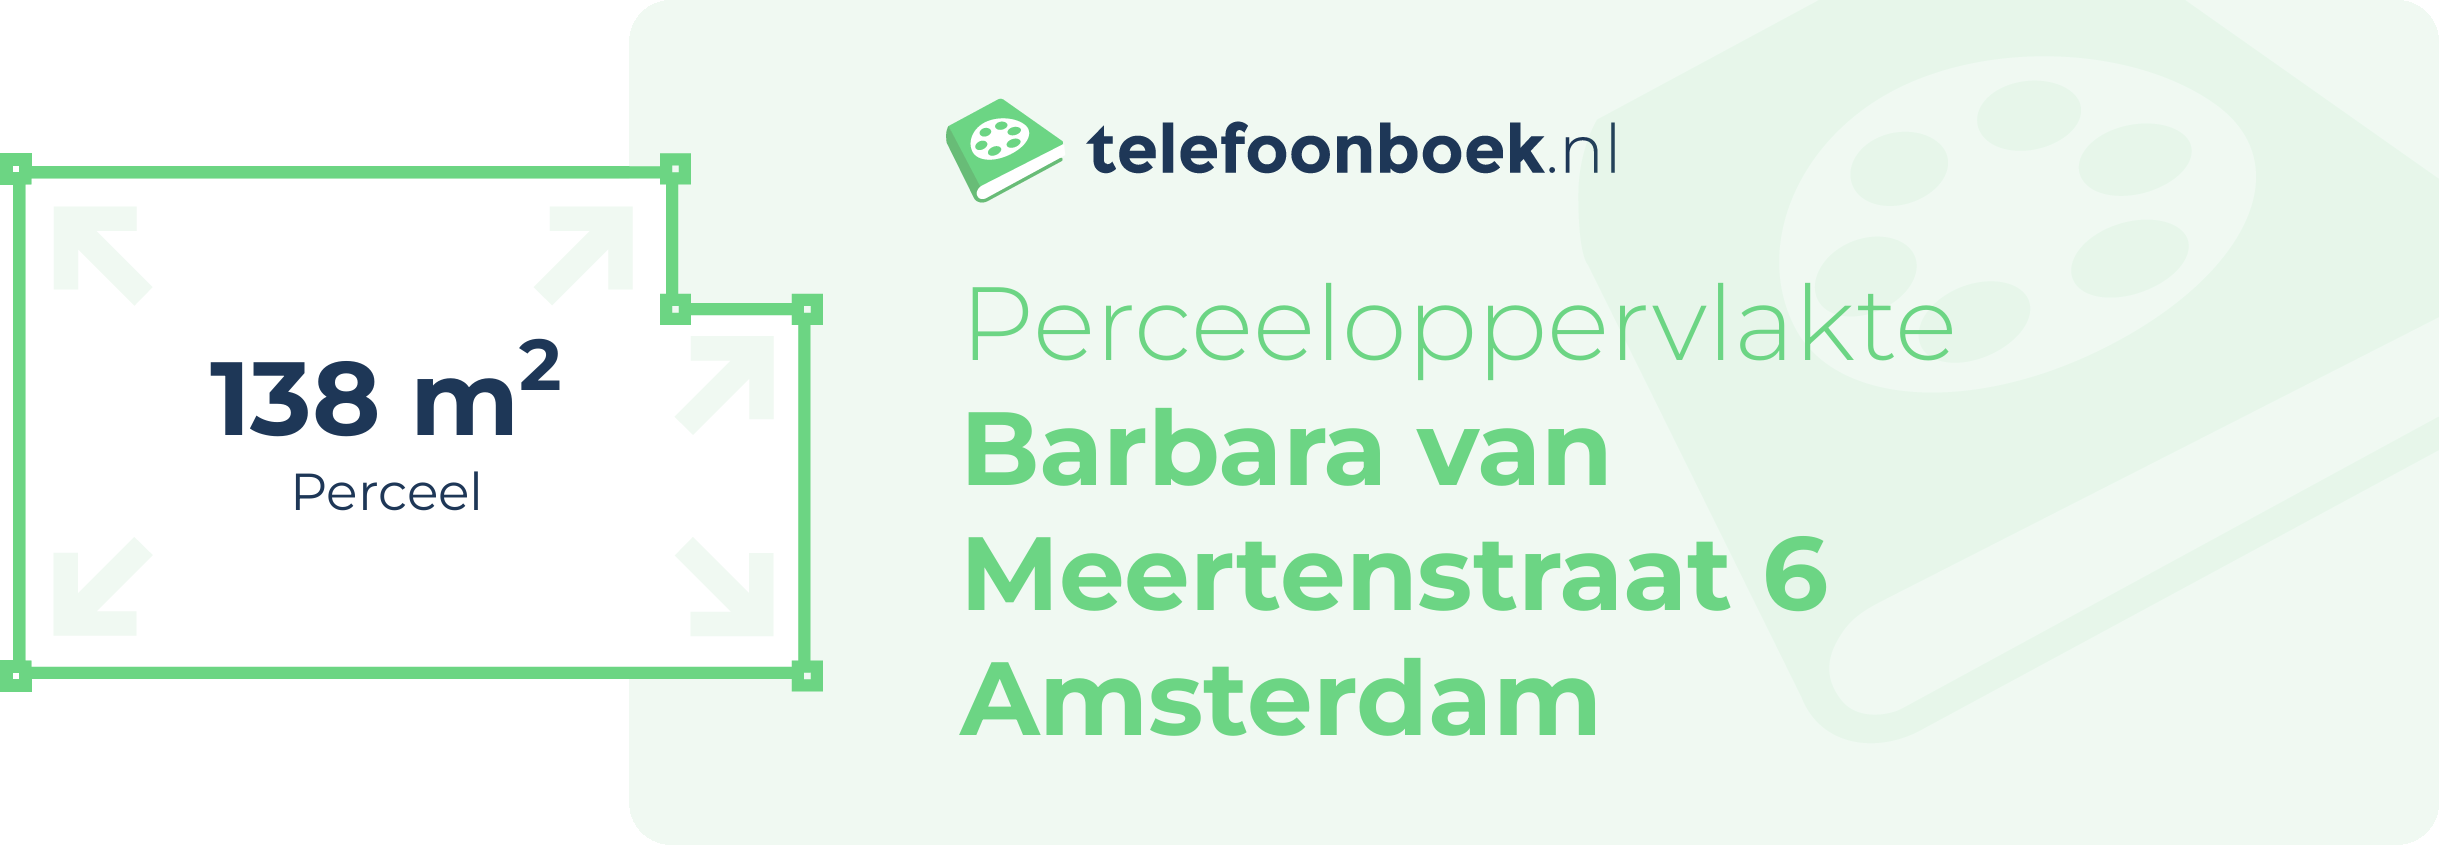 Perceeloppervlakte Barbara Van Meertenstraat 6 Amsterdam